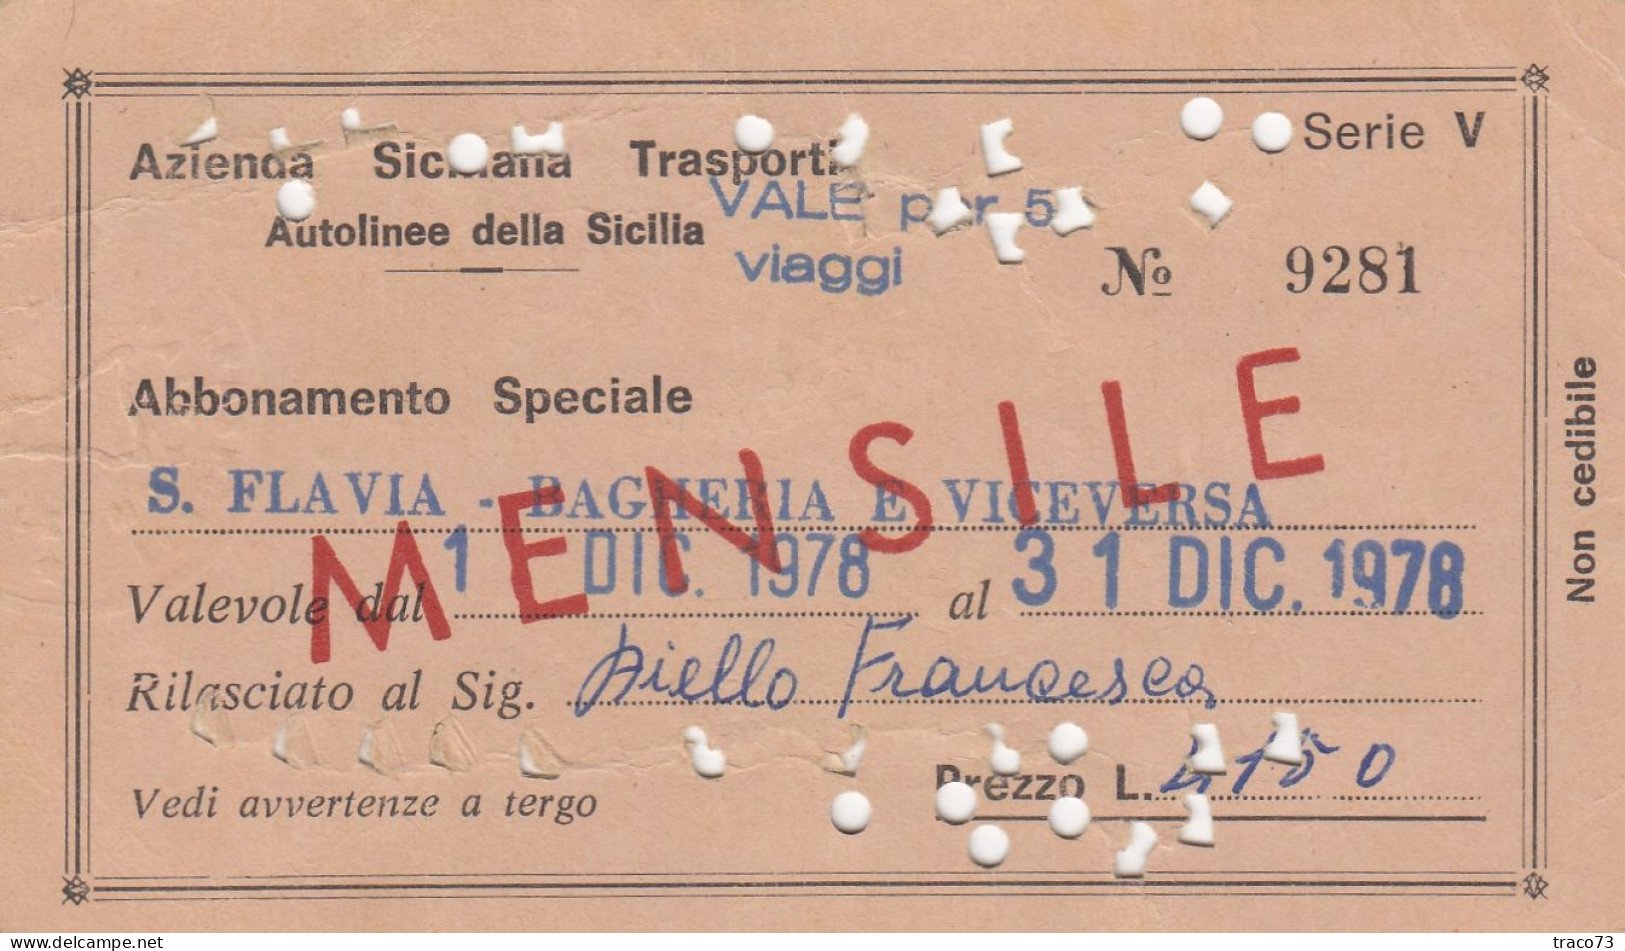 AZIENDA SICILIANA TRASPORTI / Autolinee Della Sicilia - Abbonamento Speciale _S. Flavia-Bagheria E Viceversa_ Dic. 1979 - Europa